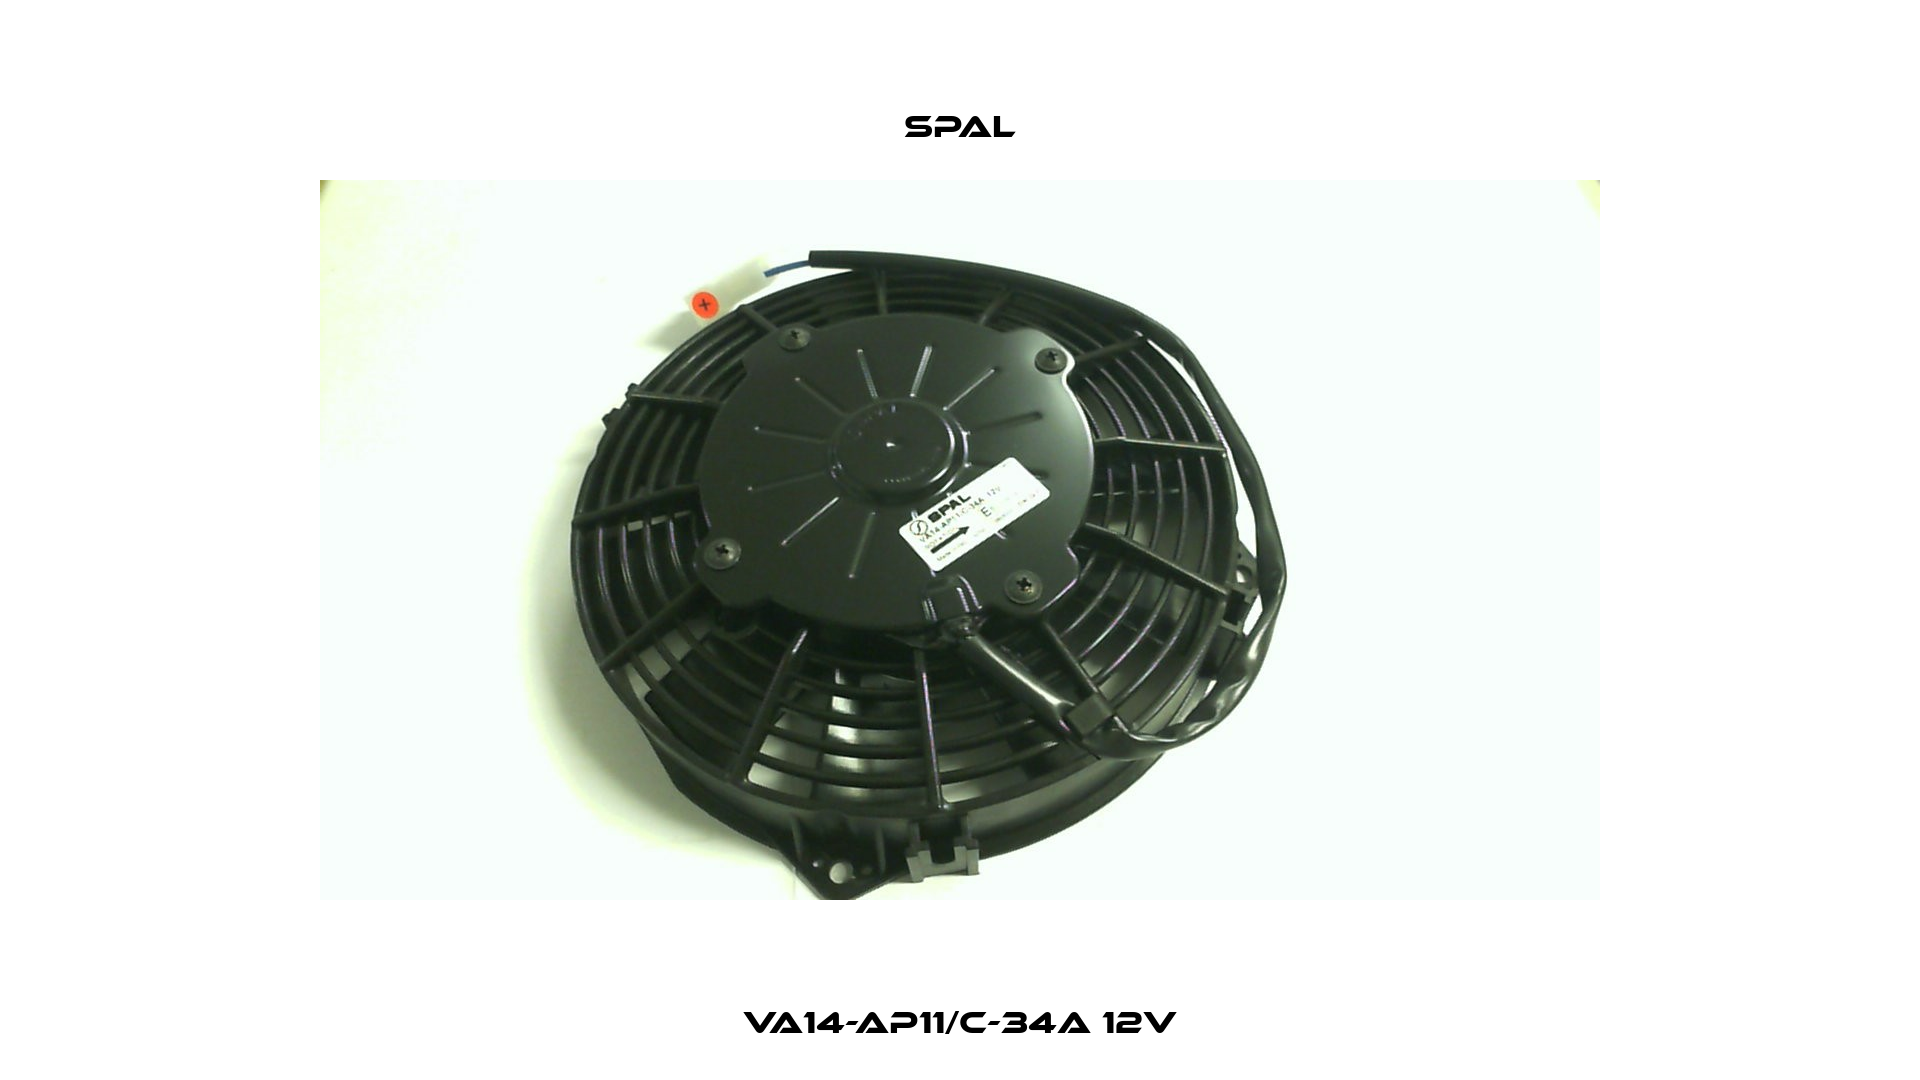 VA14-AP11/C-34A 12V SPAL